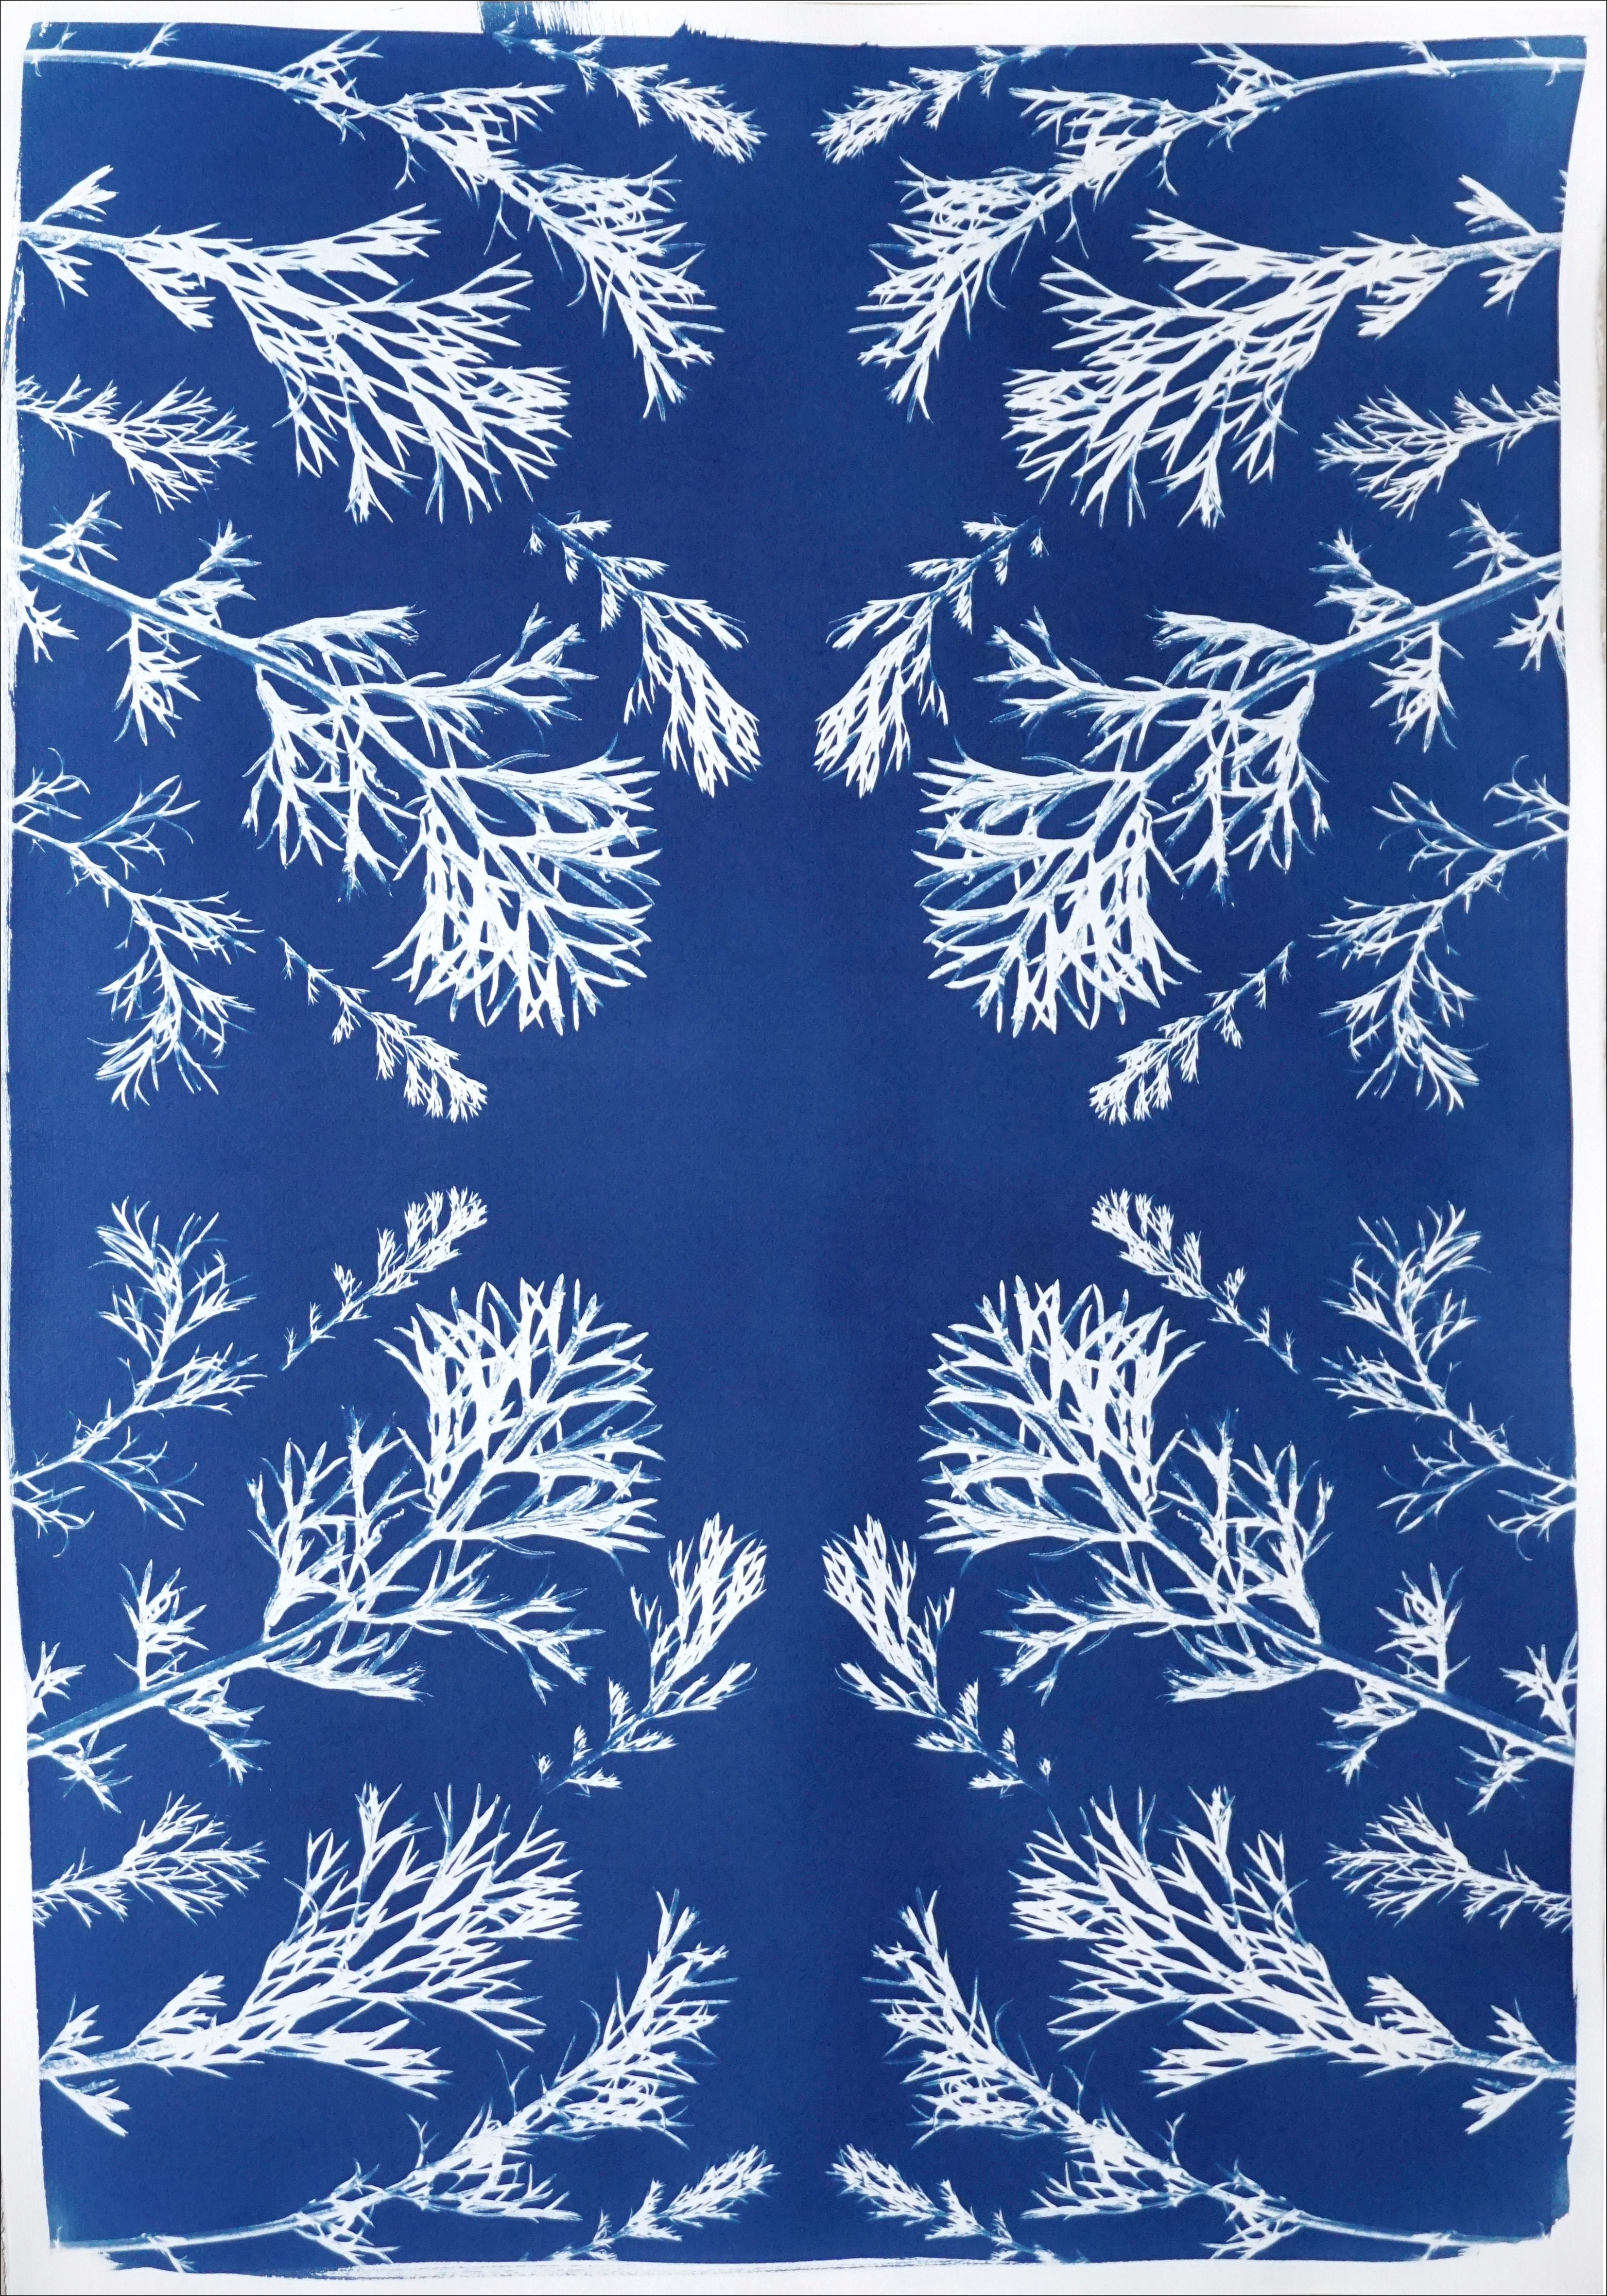 Kind of Cyan Still-Life Painting – Klassische botanische Zyanotypie aus gepressten Blumen im Vintage-Stil, handwerklich hergestellt, blaue Töne